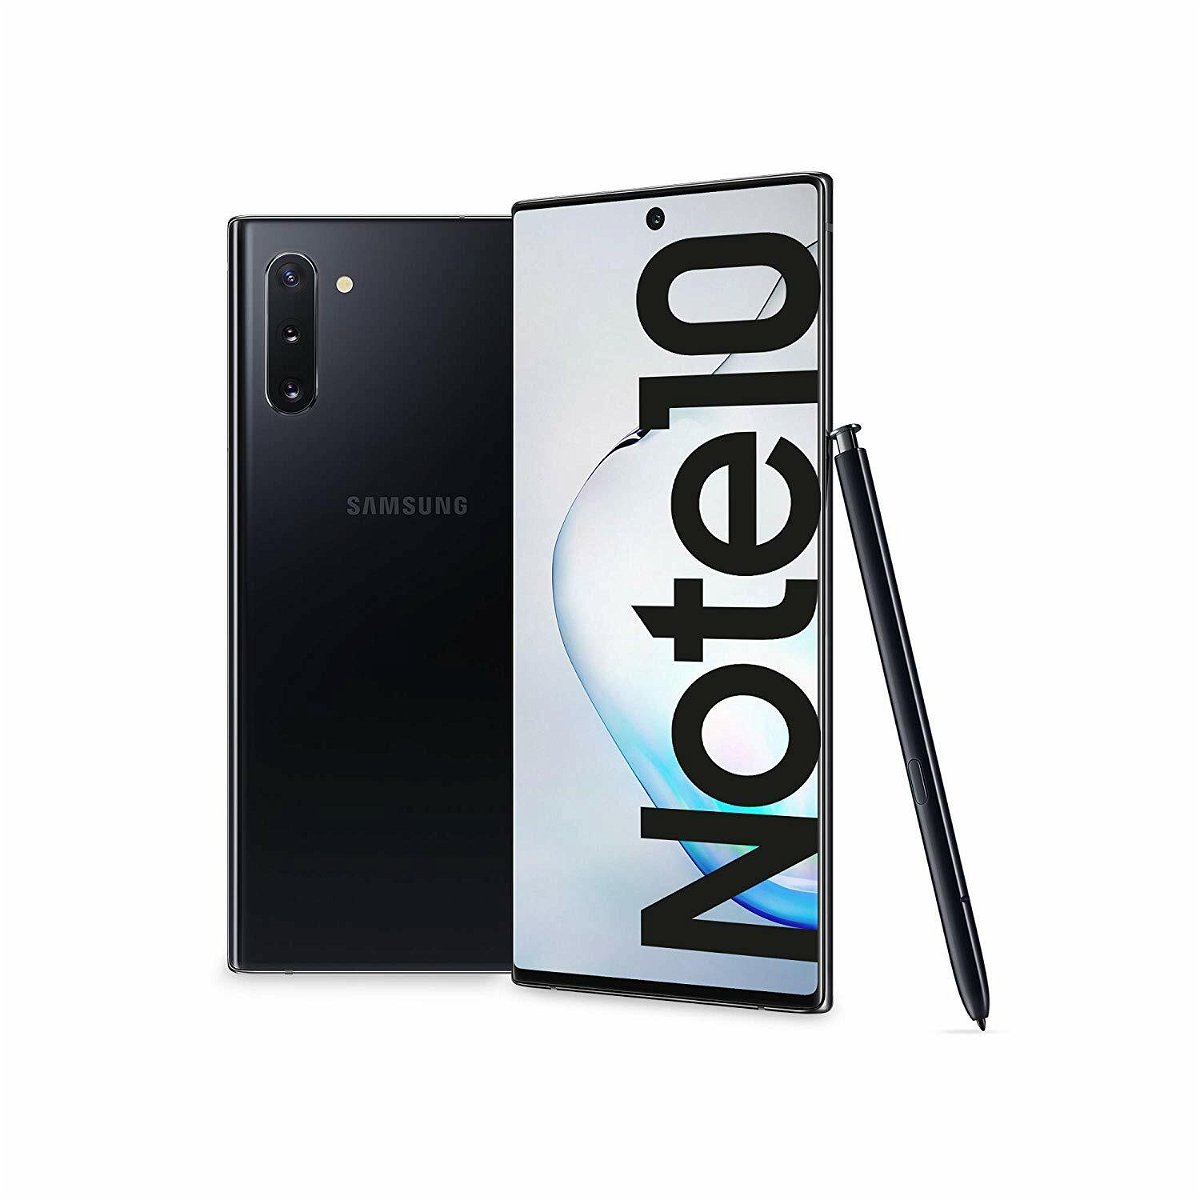 Immagine stampa del Samsung Galaxy Note 10